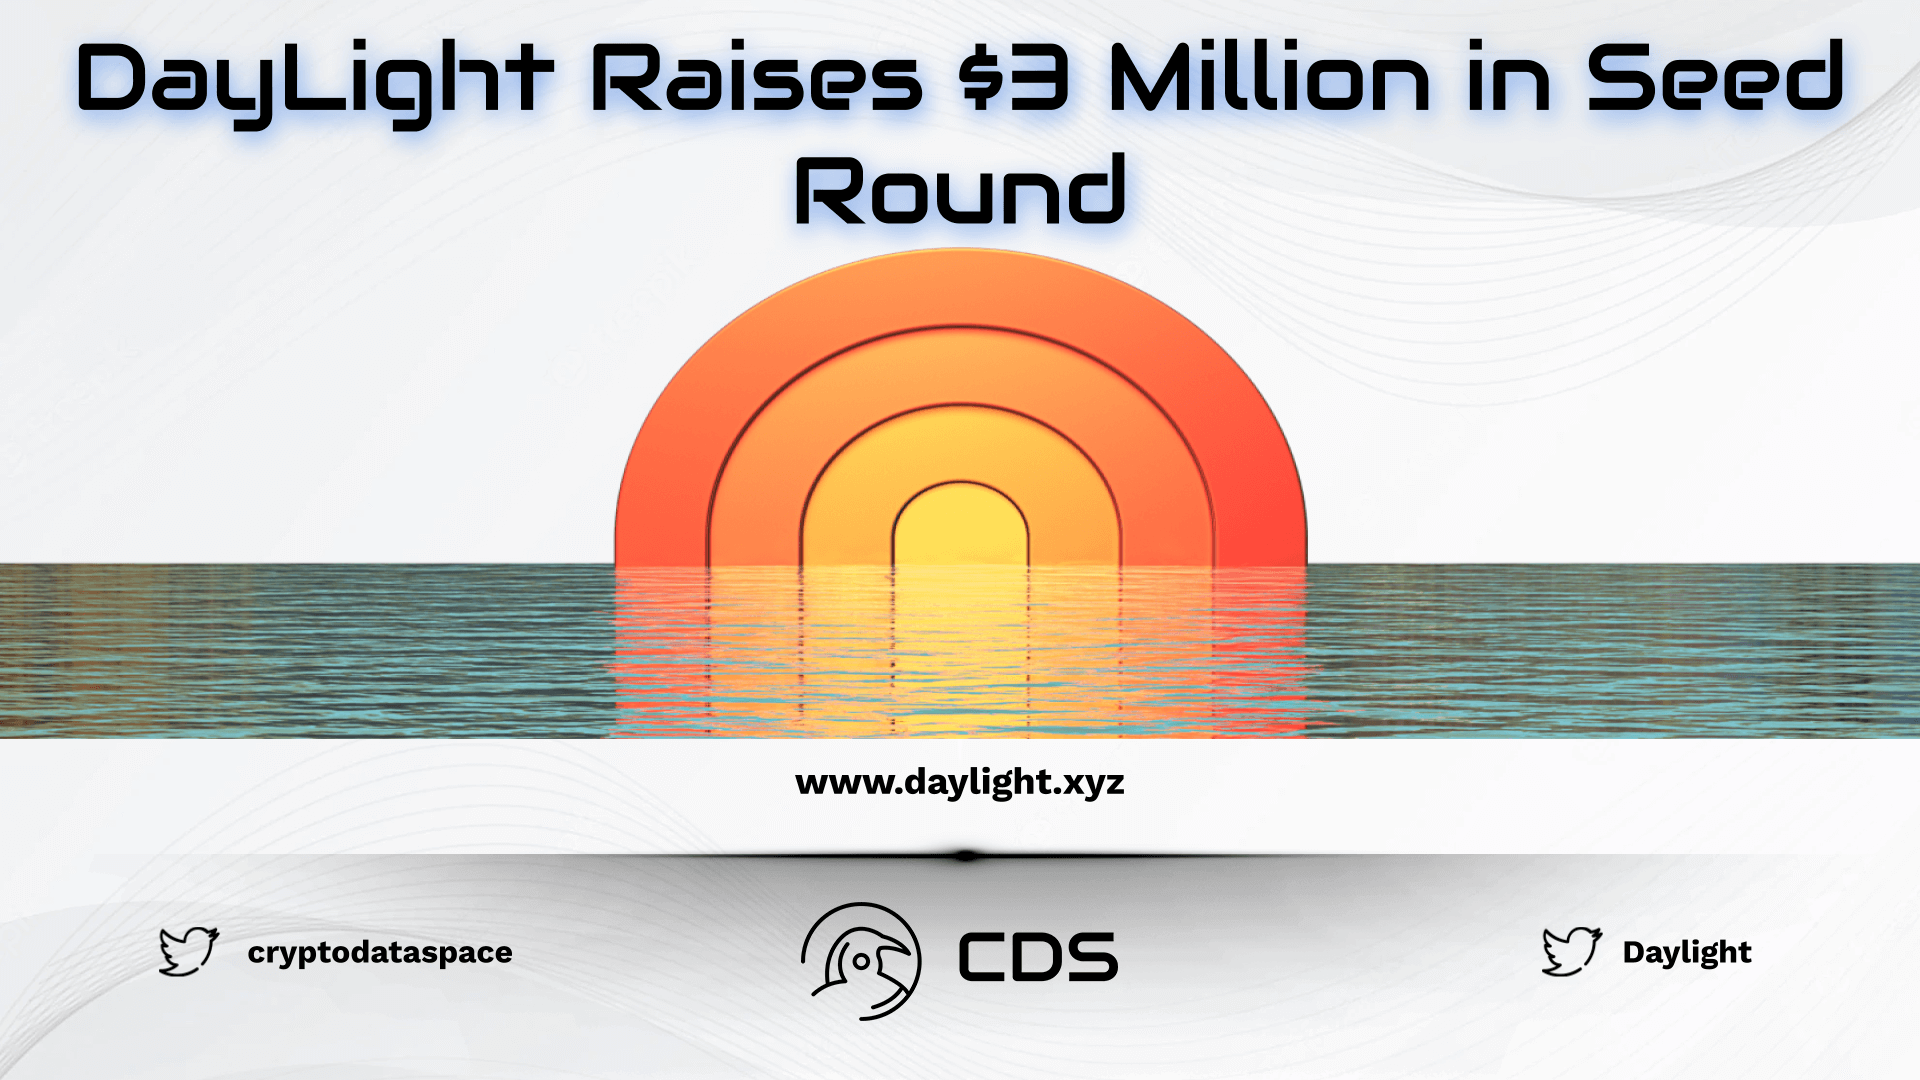 DayLight Raises $3 Million in Seed Round